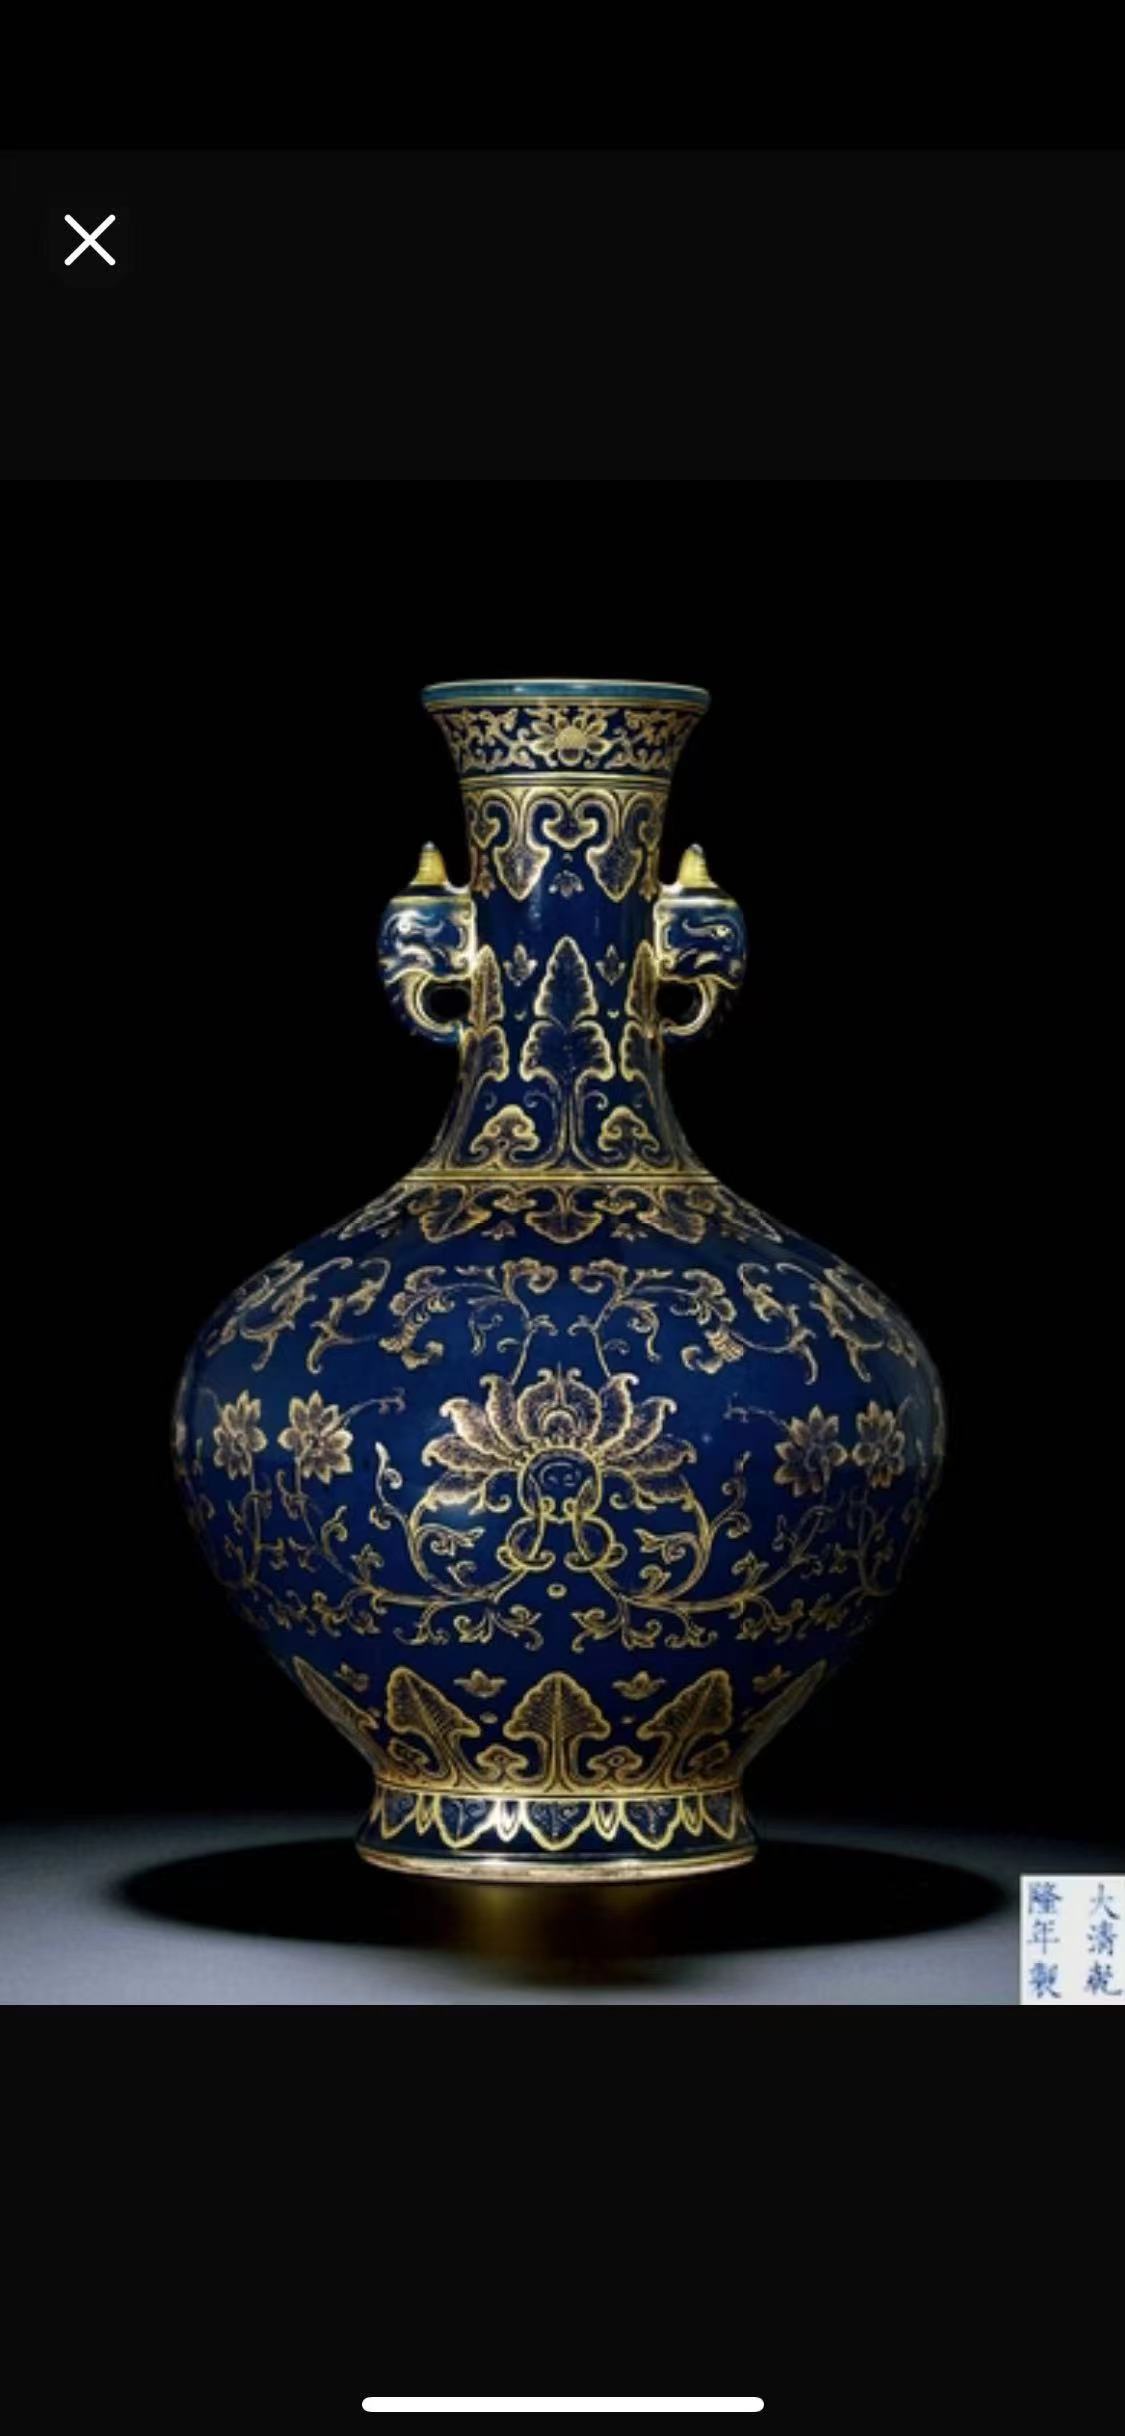 威海免费古董花瓶交易古董卖法交易